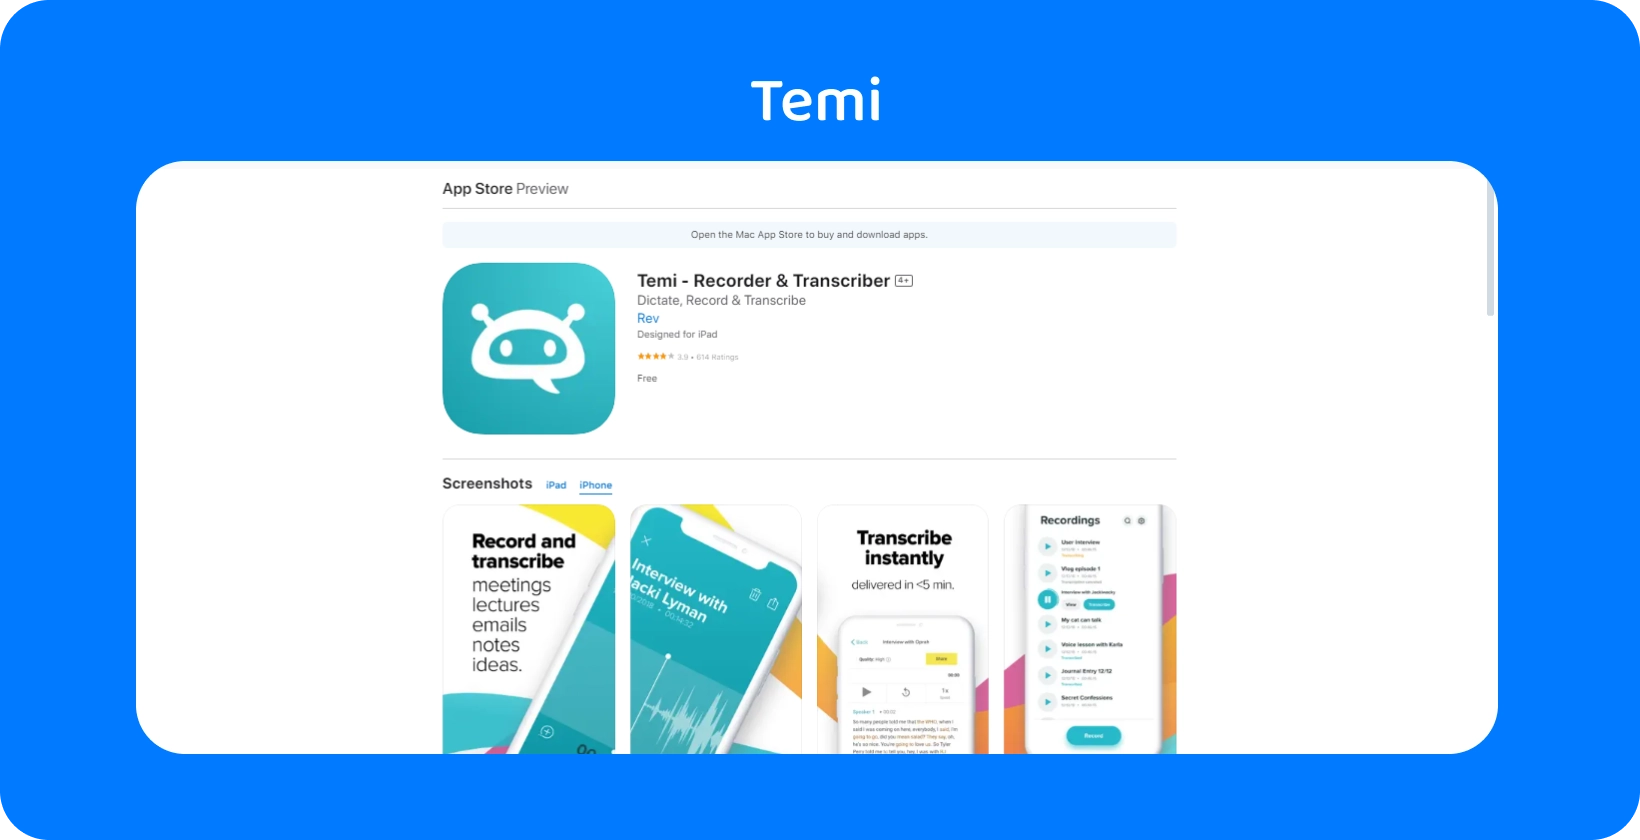 Skjámynd af Temi App Store skráningu, með áherslu á skjóta upptöku og augnablik umritunareiginleika.